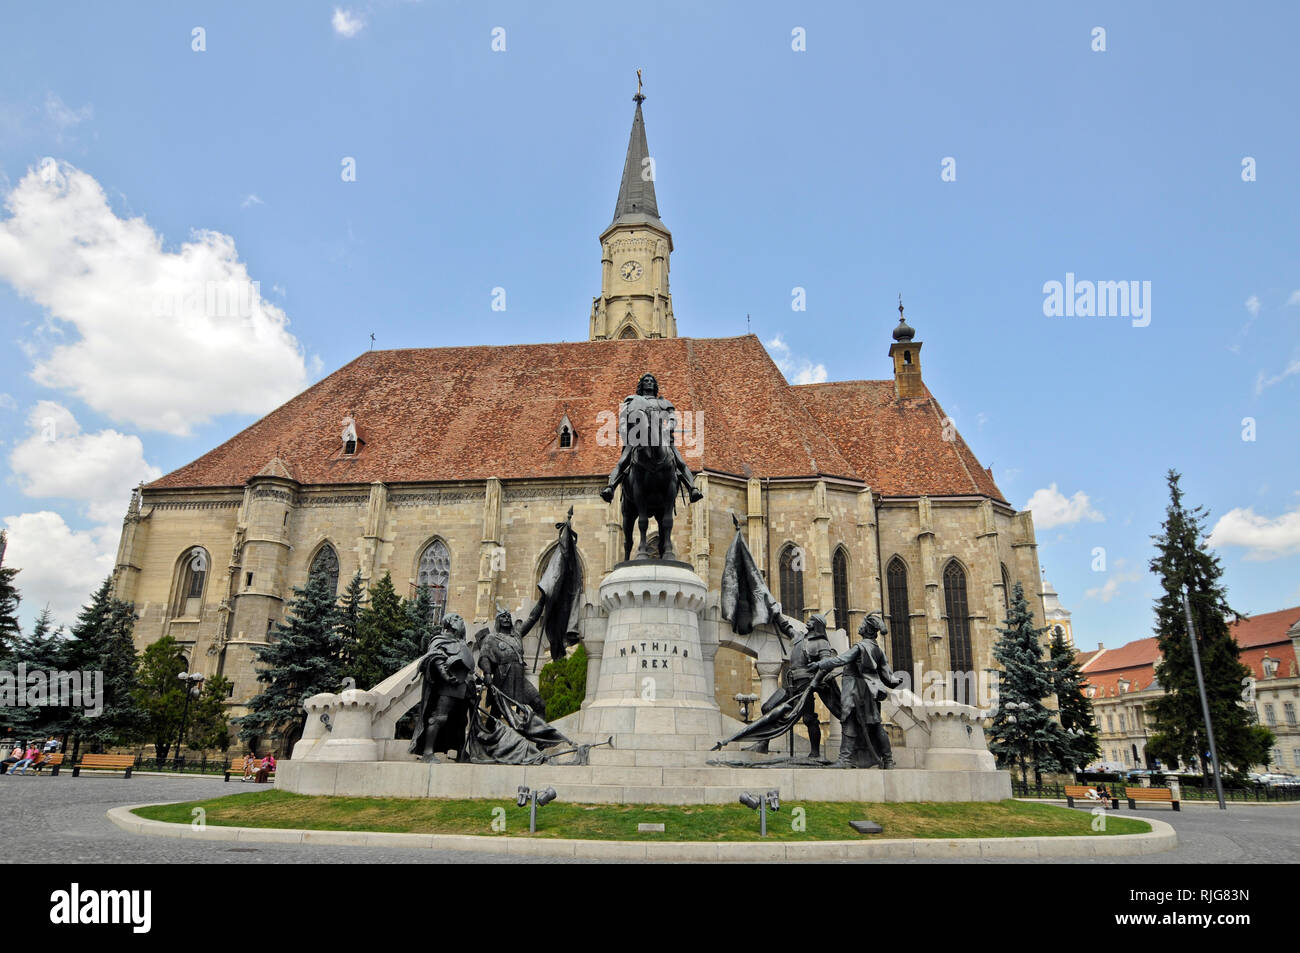 St. Michael's Church at Unirii Square (Union Square). Cluj-Napoca, Romania Stock Photo